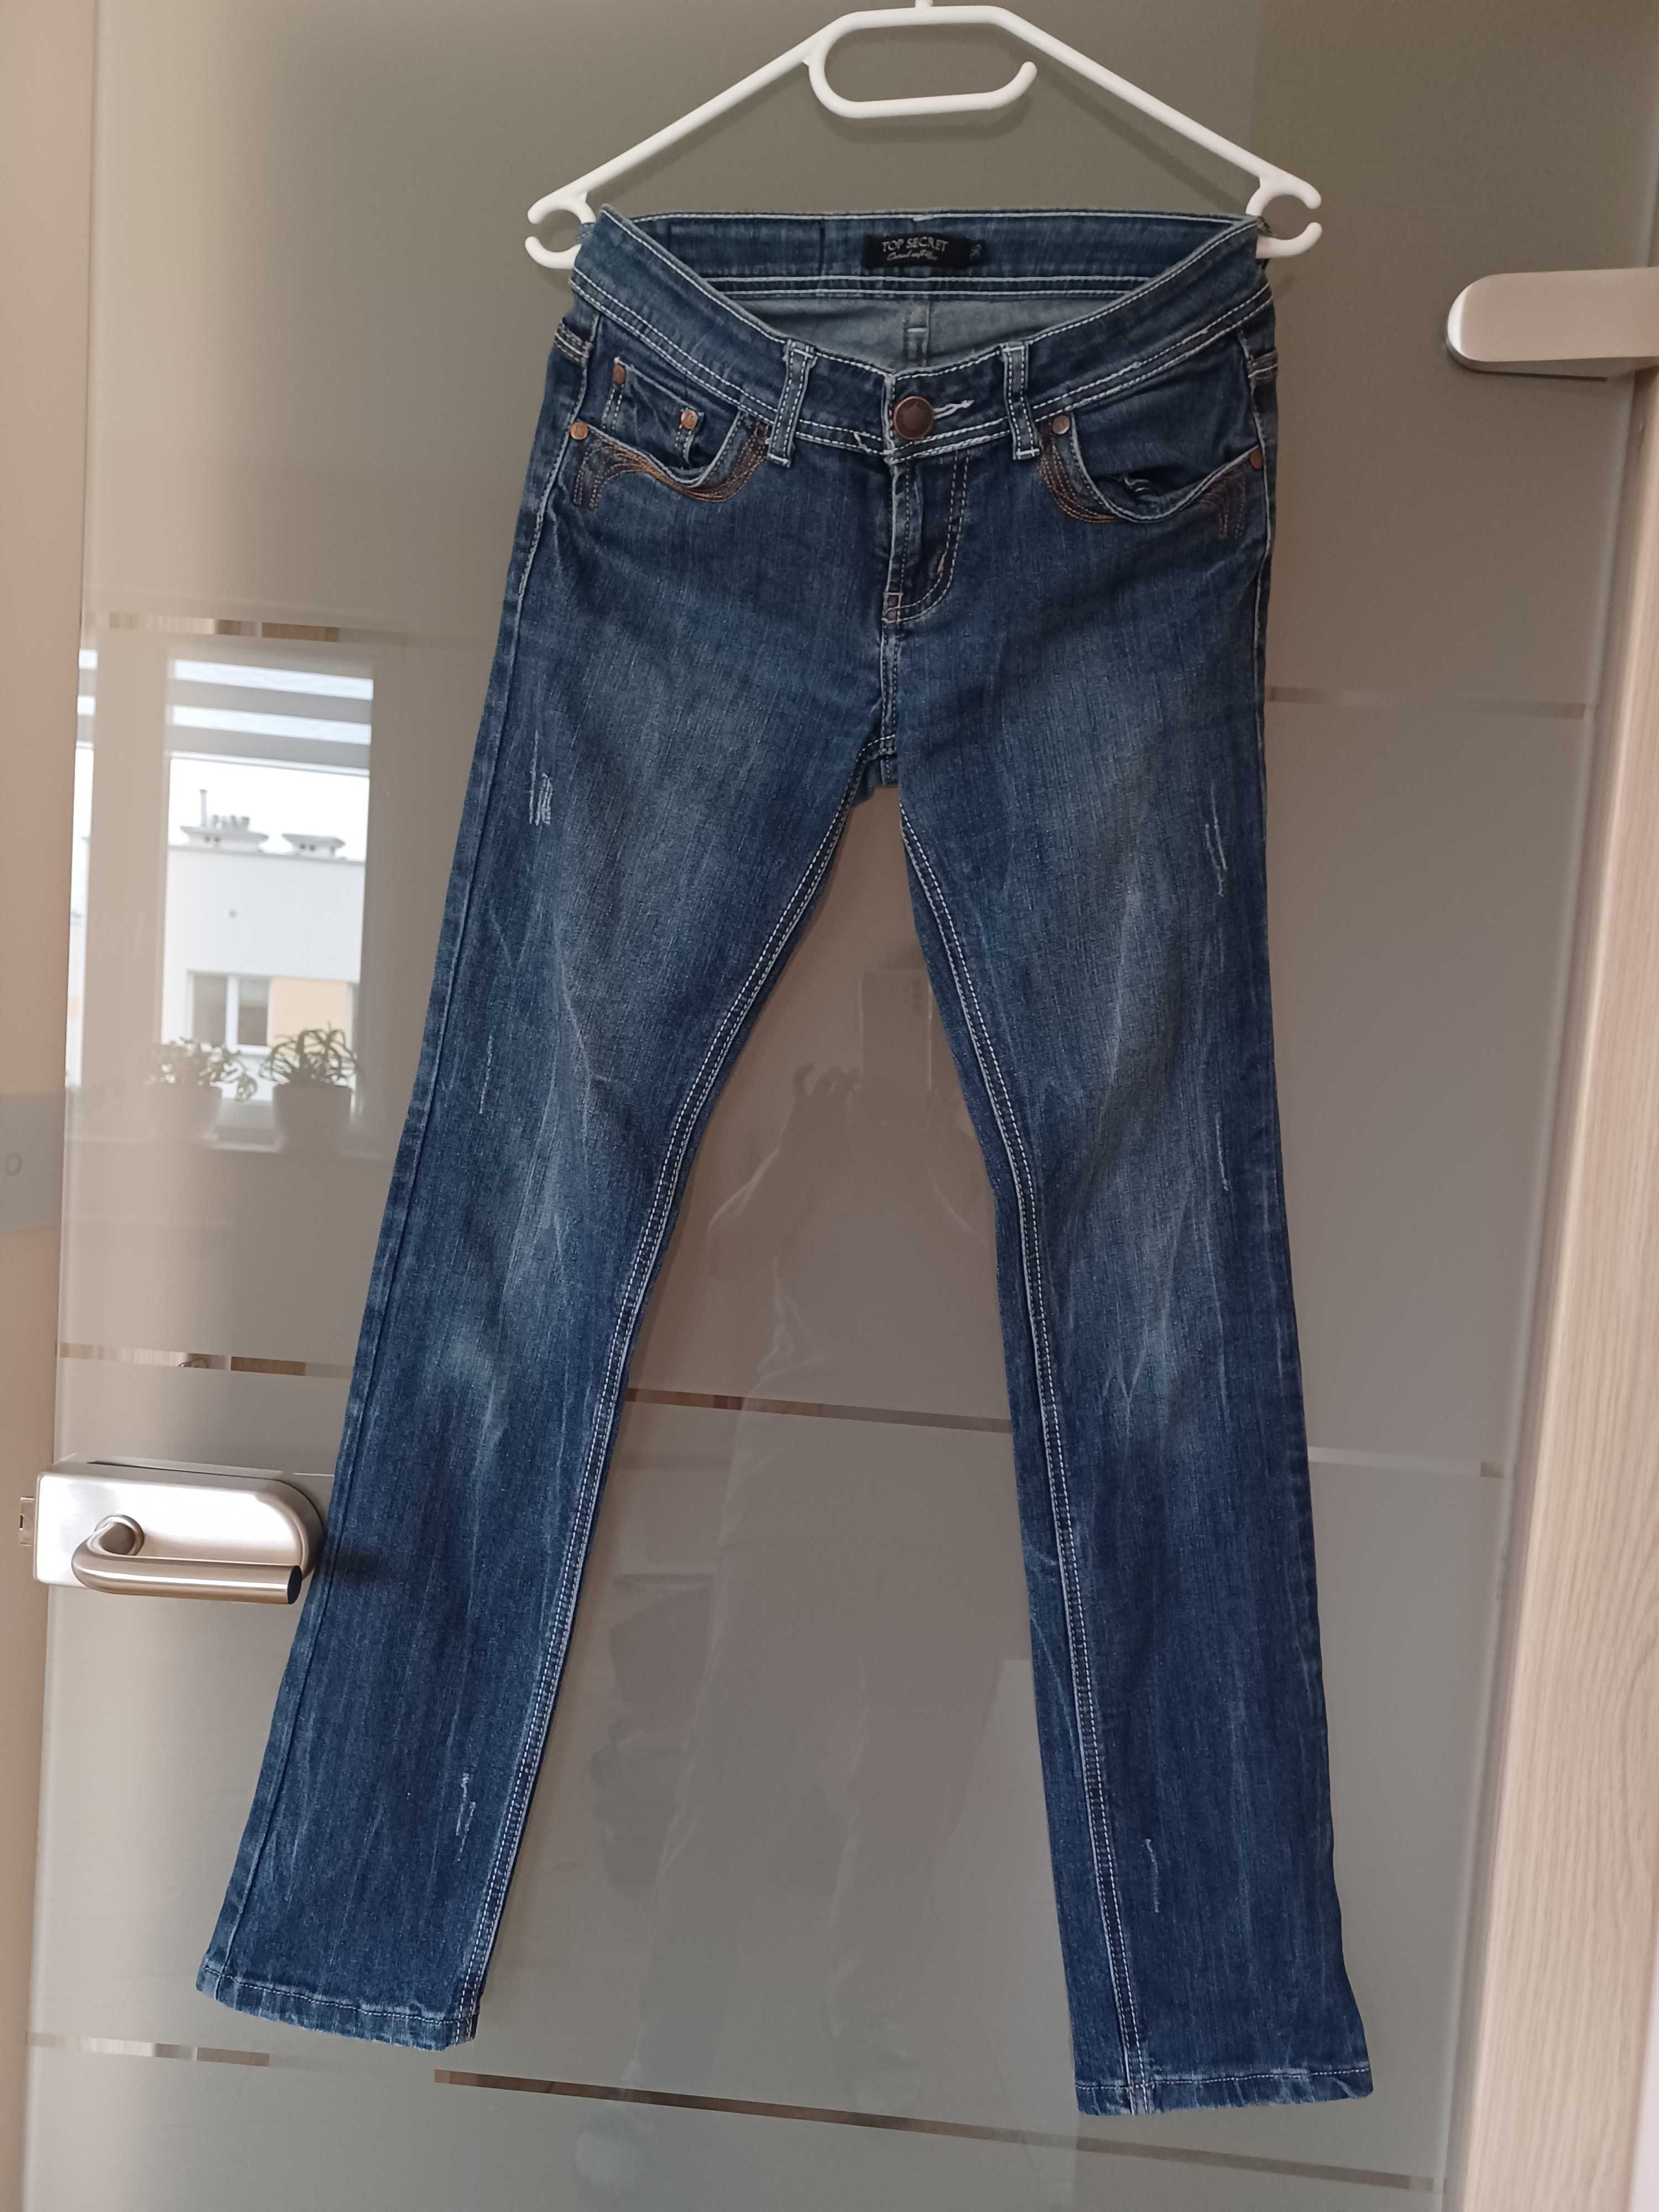 s14. Cudowne jeansowe Spodnie marki Top Secret rozmiar 36.